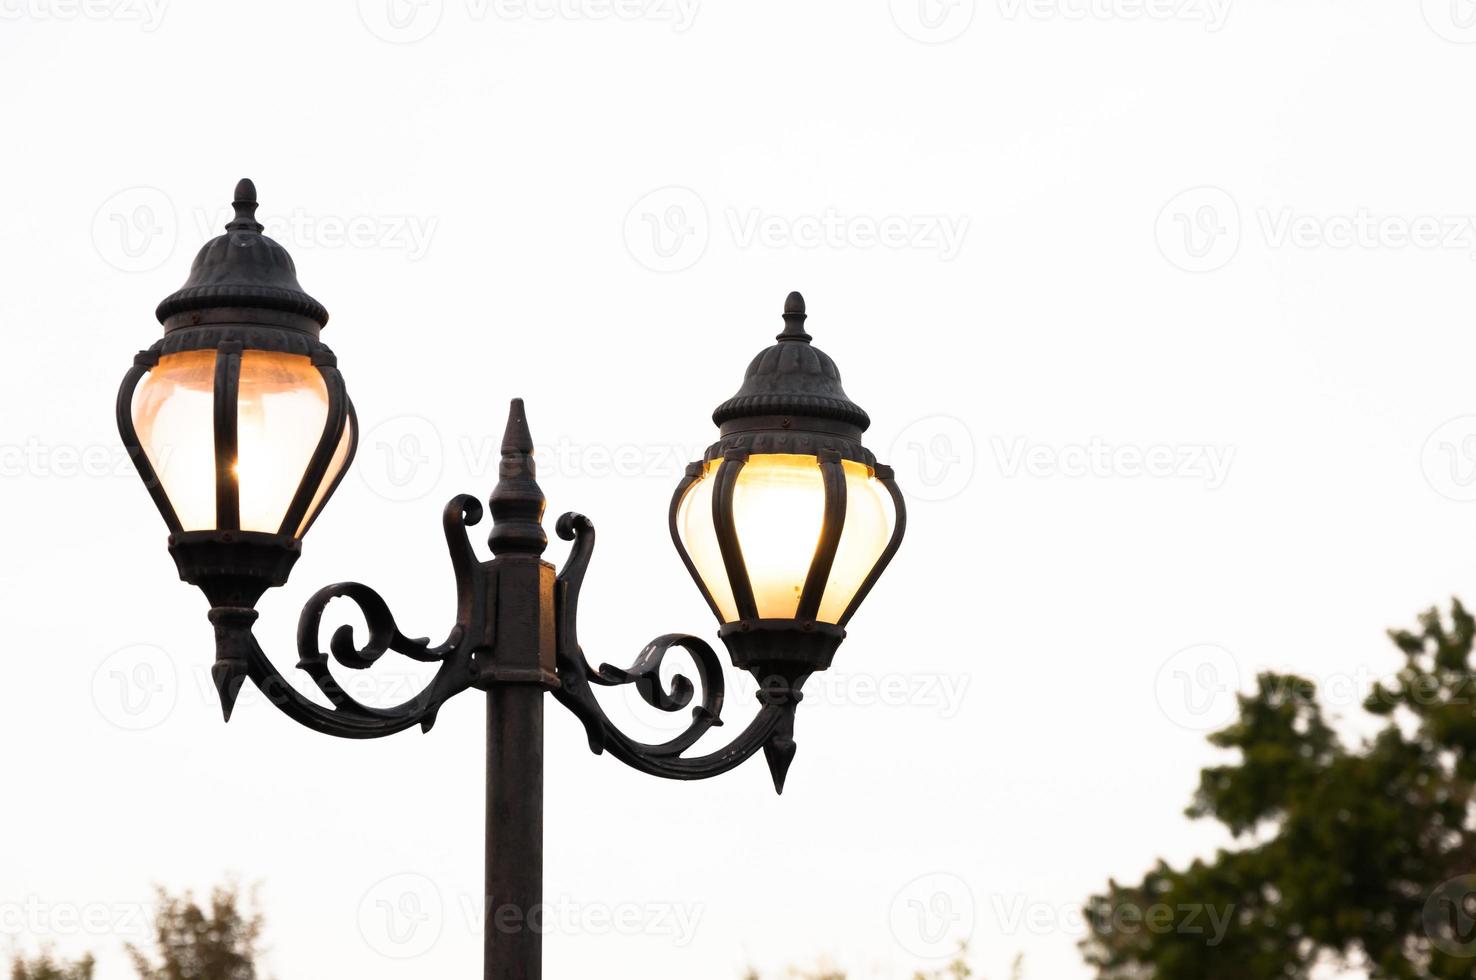 magnifique ancien rue antique style lampe Publier avec effet de éclat de faible lumière de le coucher du soleil photo